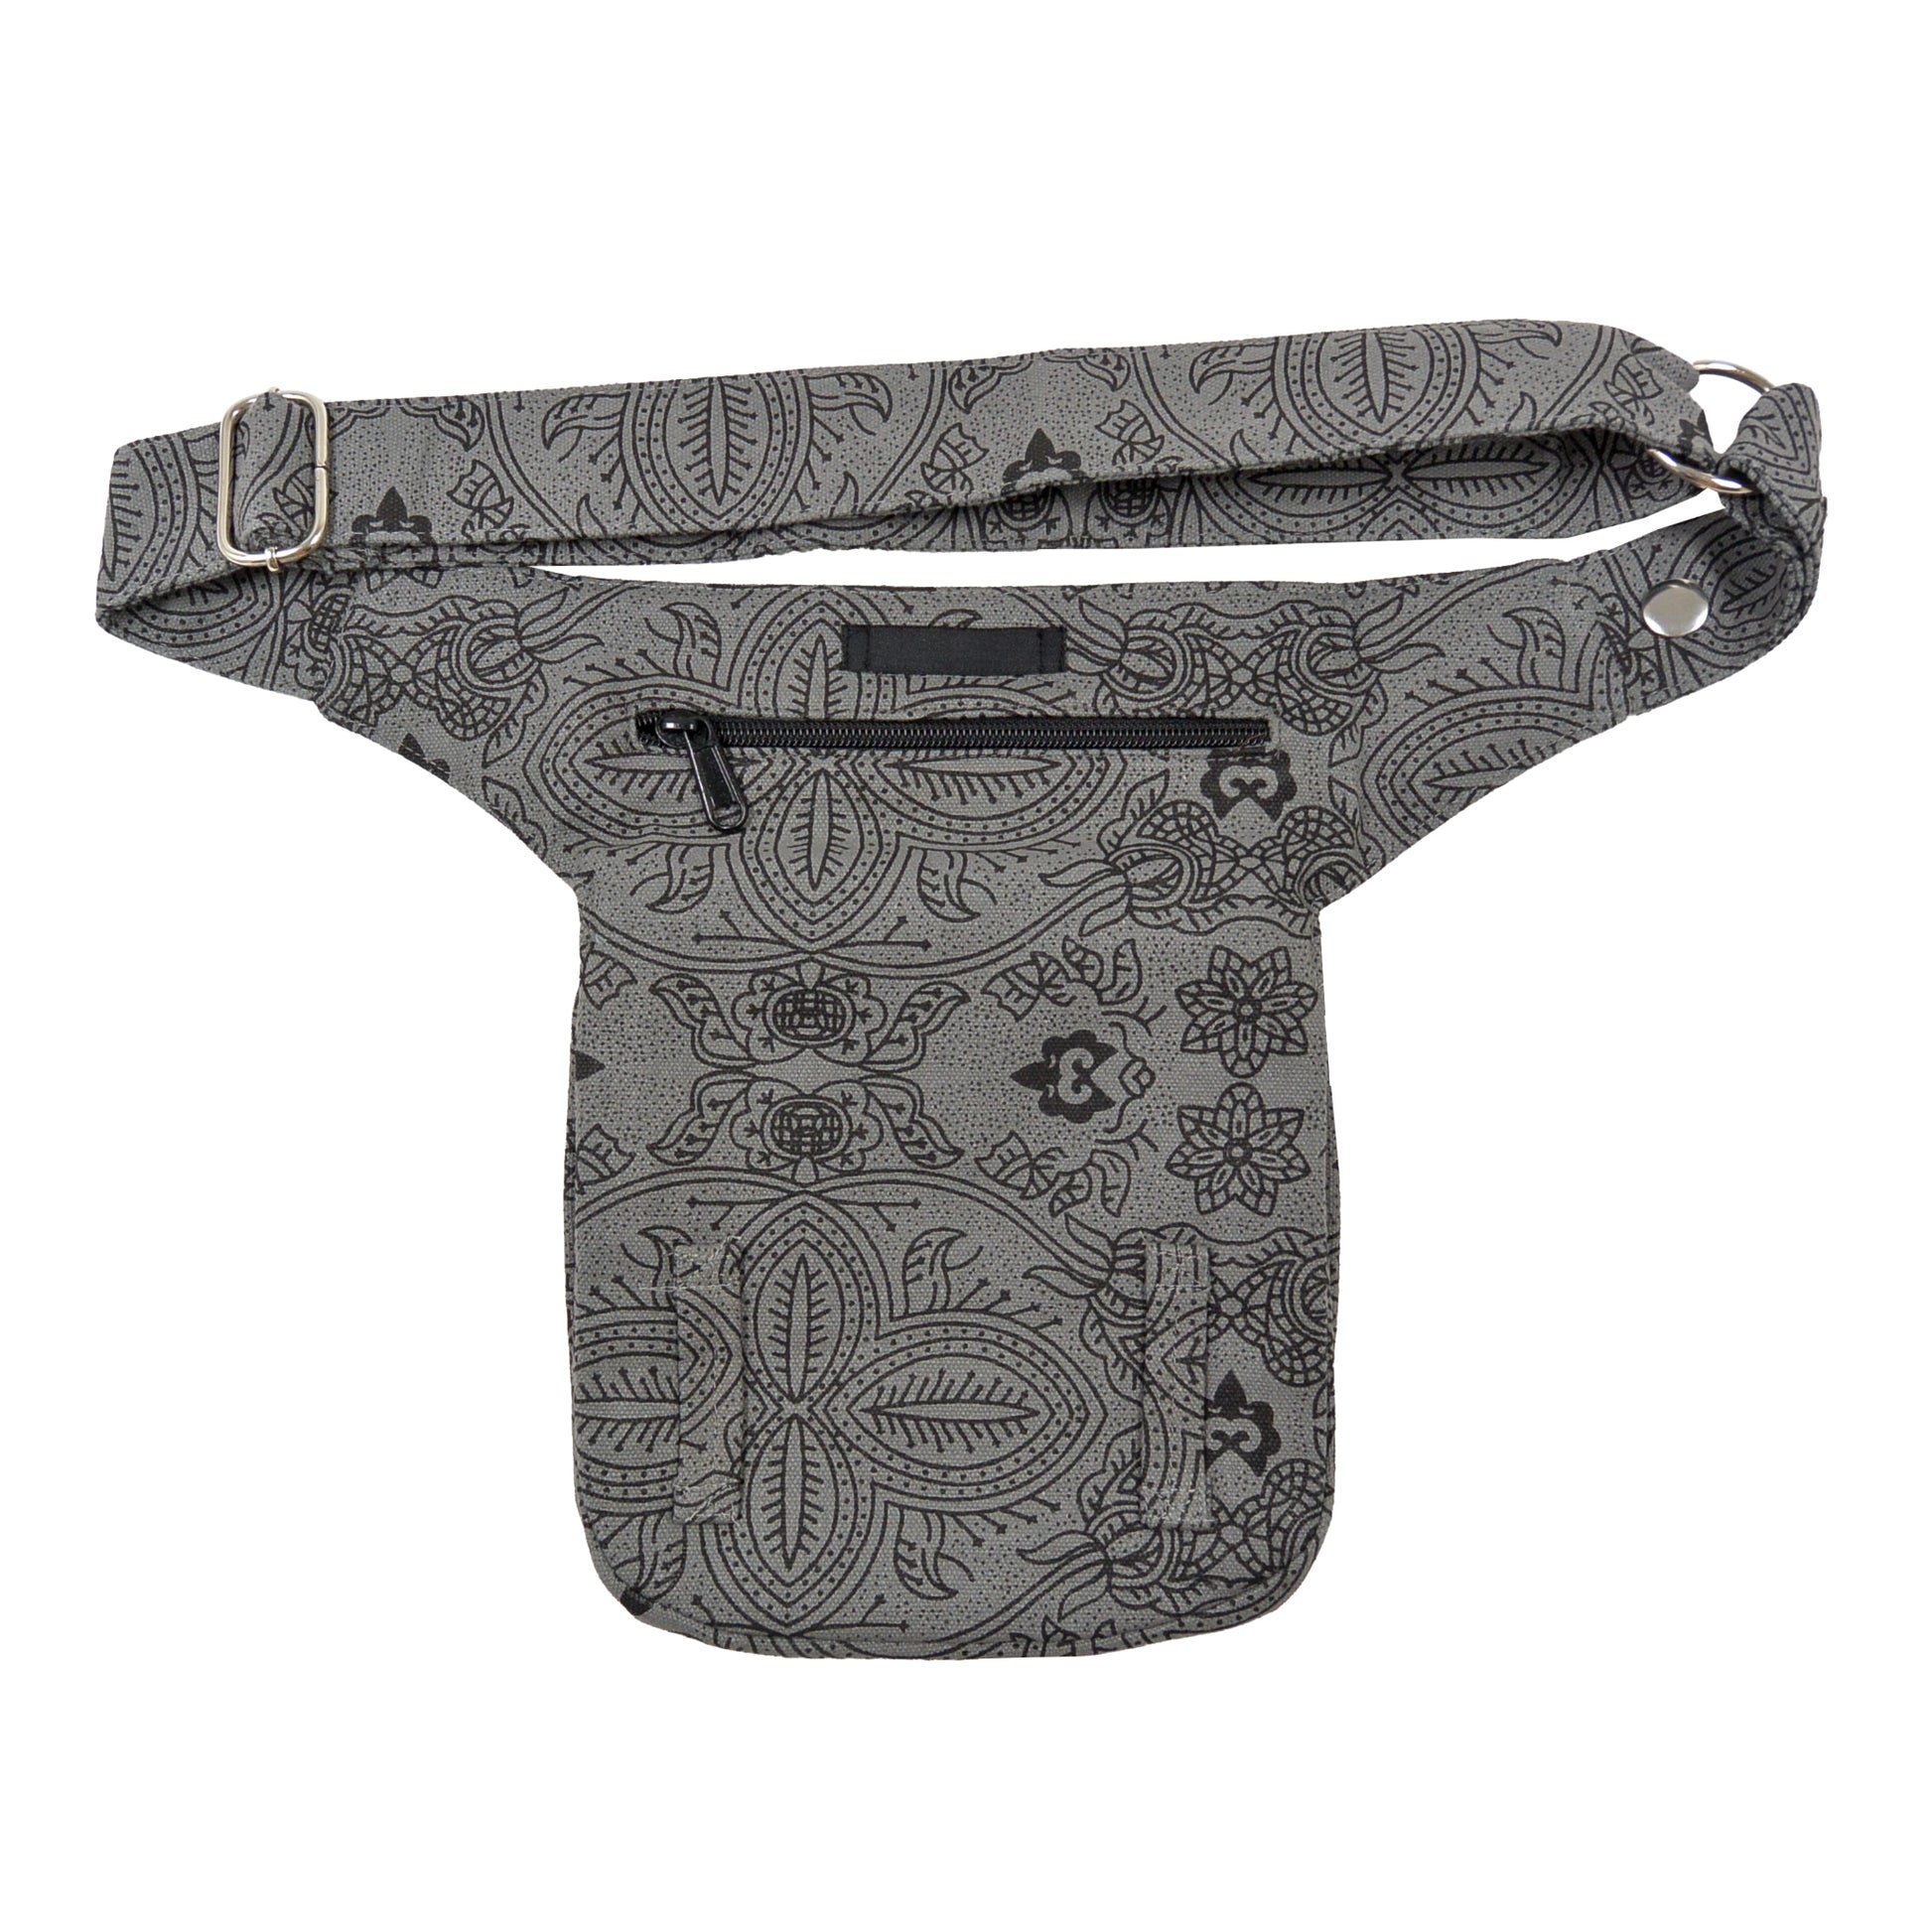 Bauchtasche Hüfttasche Stoff Baumwolle in Grau mit Ornamenten und Muster Mix  mit Reißverschlussfach und zwei Gürtelschlaufen auf der hinteren Seite .